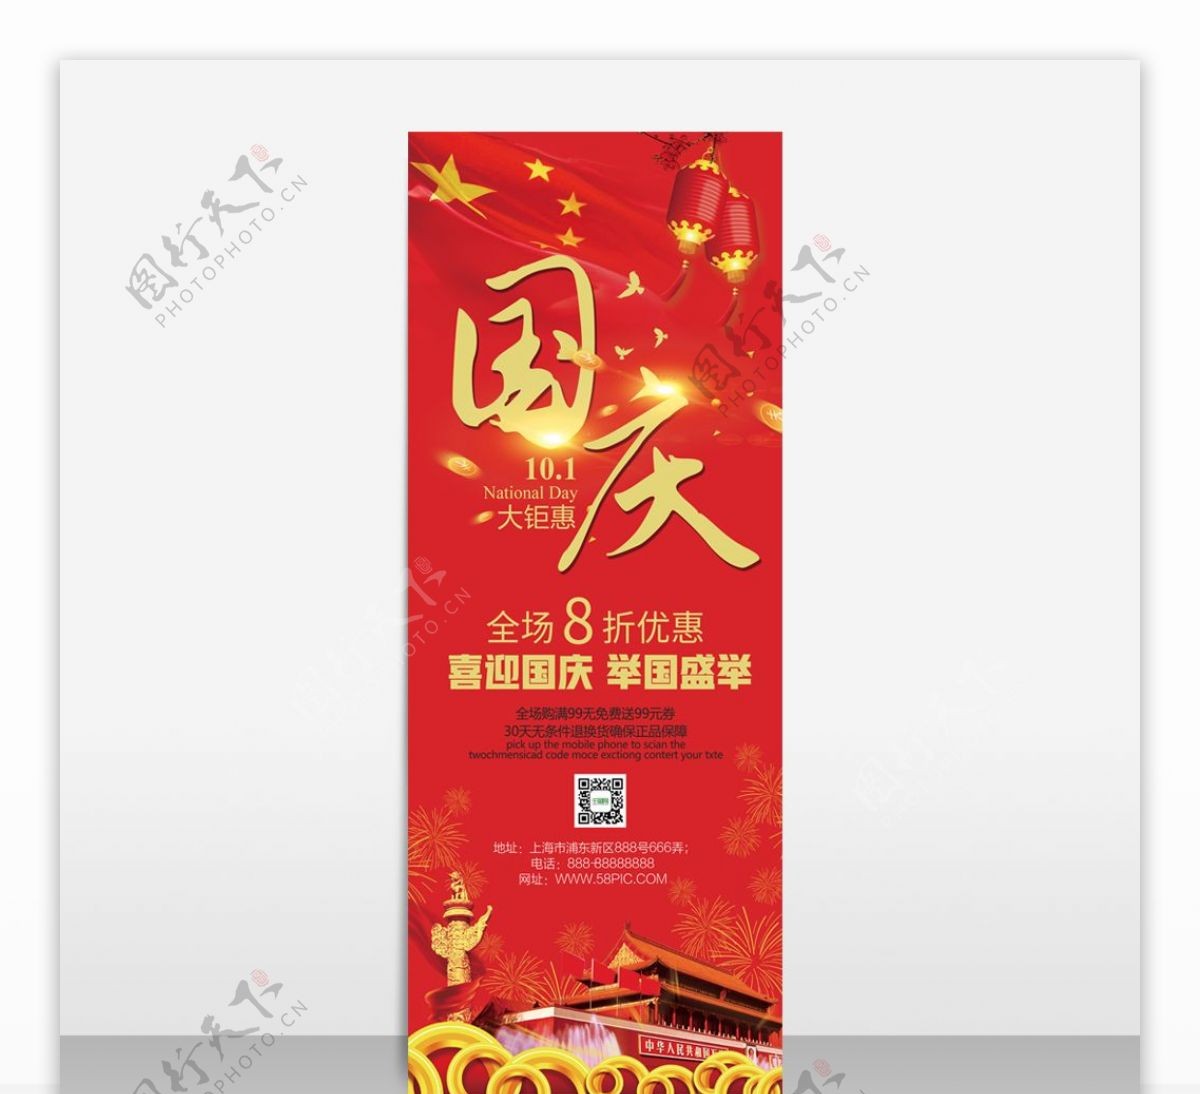 大红色中国风国庆节大钜惠促销海报